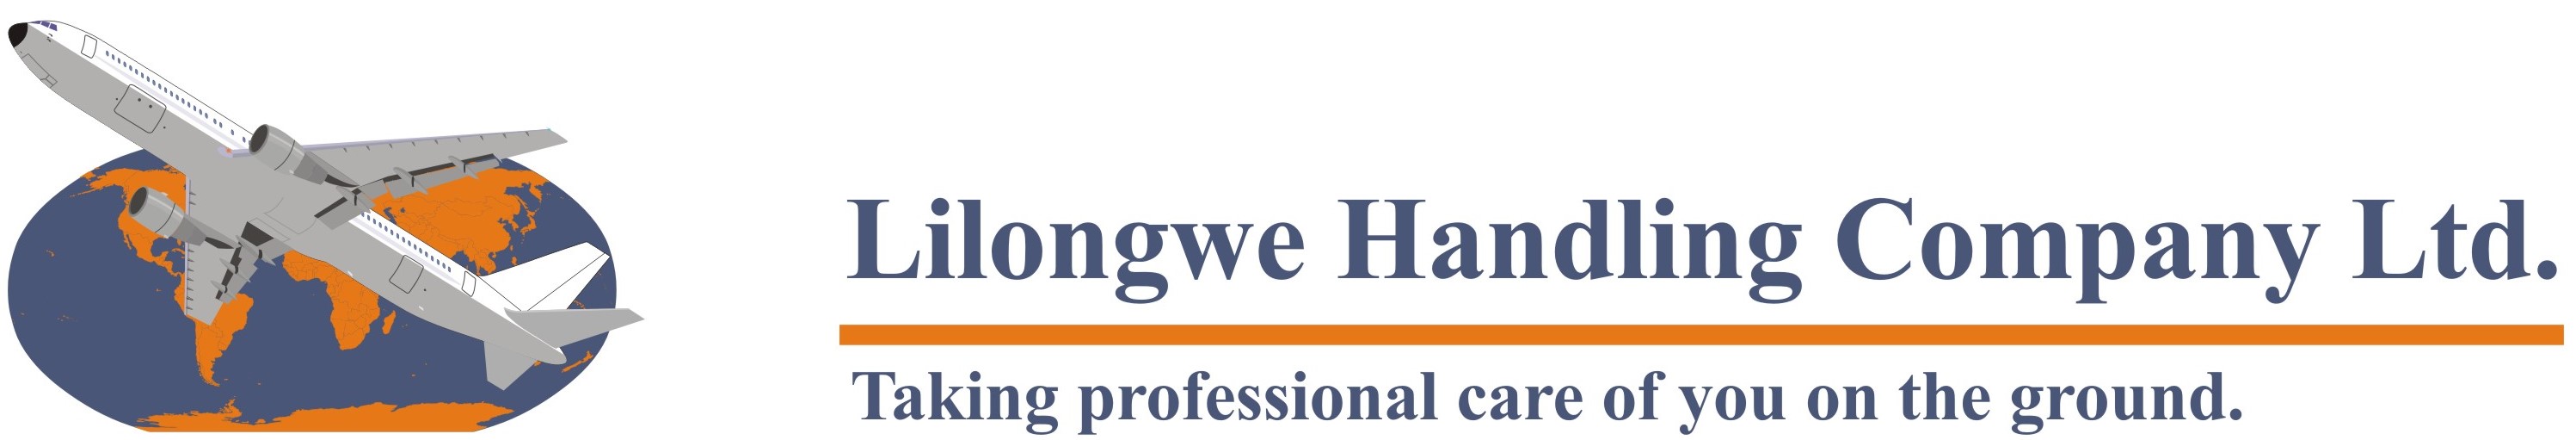 Lilongwe-Handling-Company-Ltd-Logo-RGB-FINAL-Copy.jpg